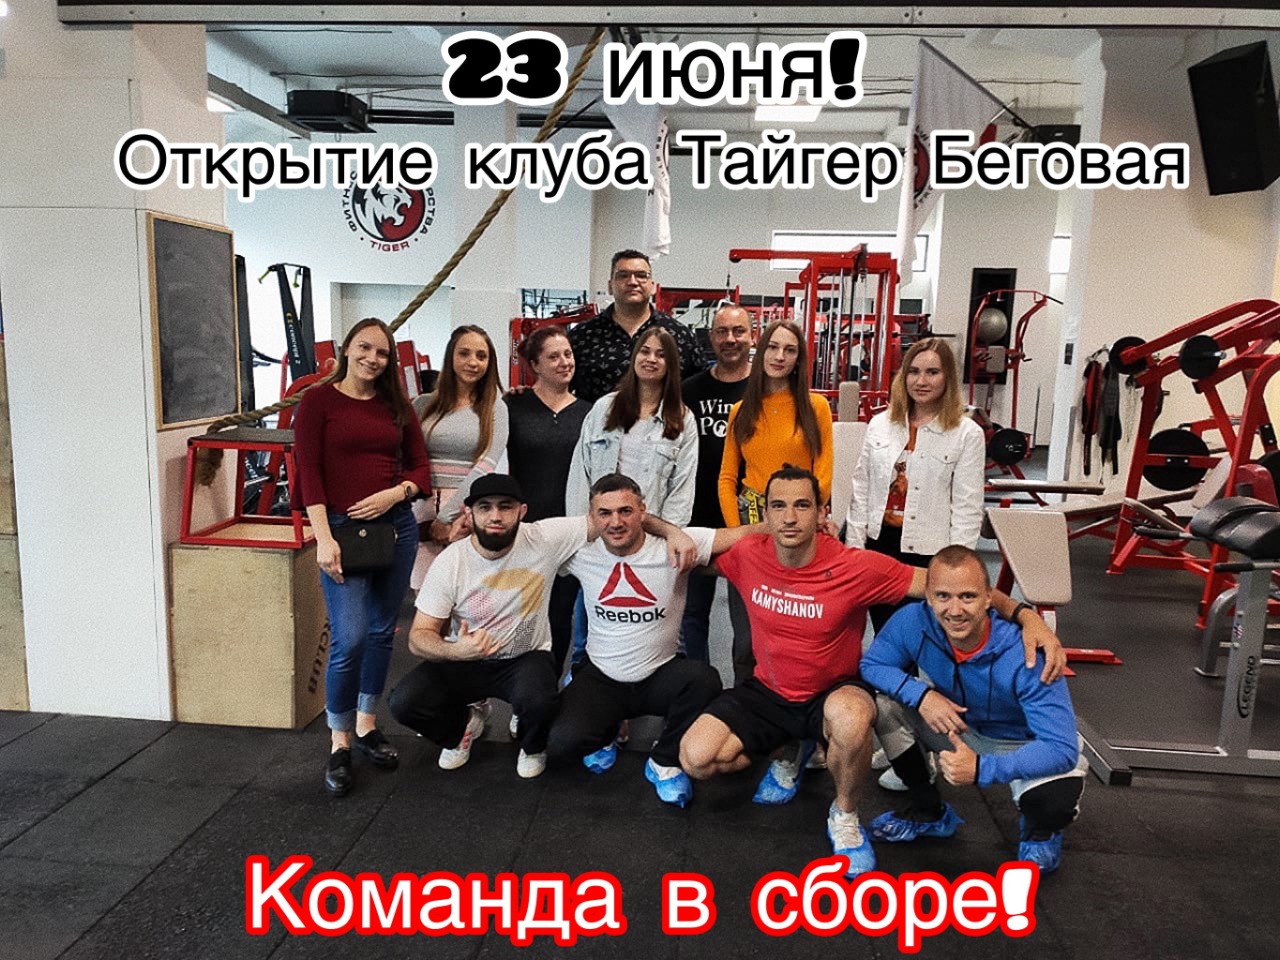 Открытие фитнес клубов после карантина: дата возобновления работы в москве и санкт-петербурге